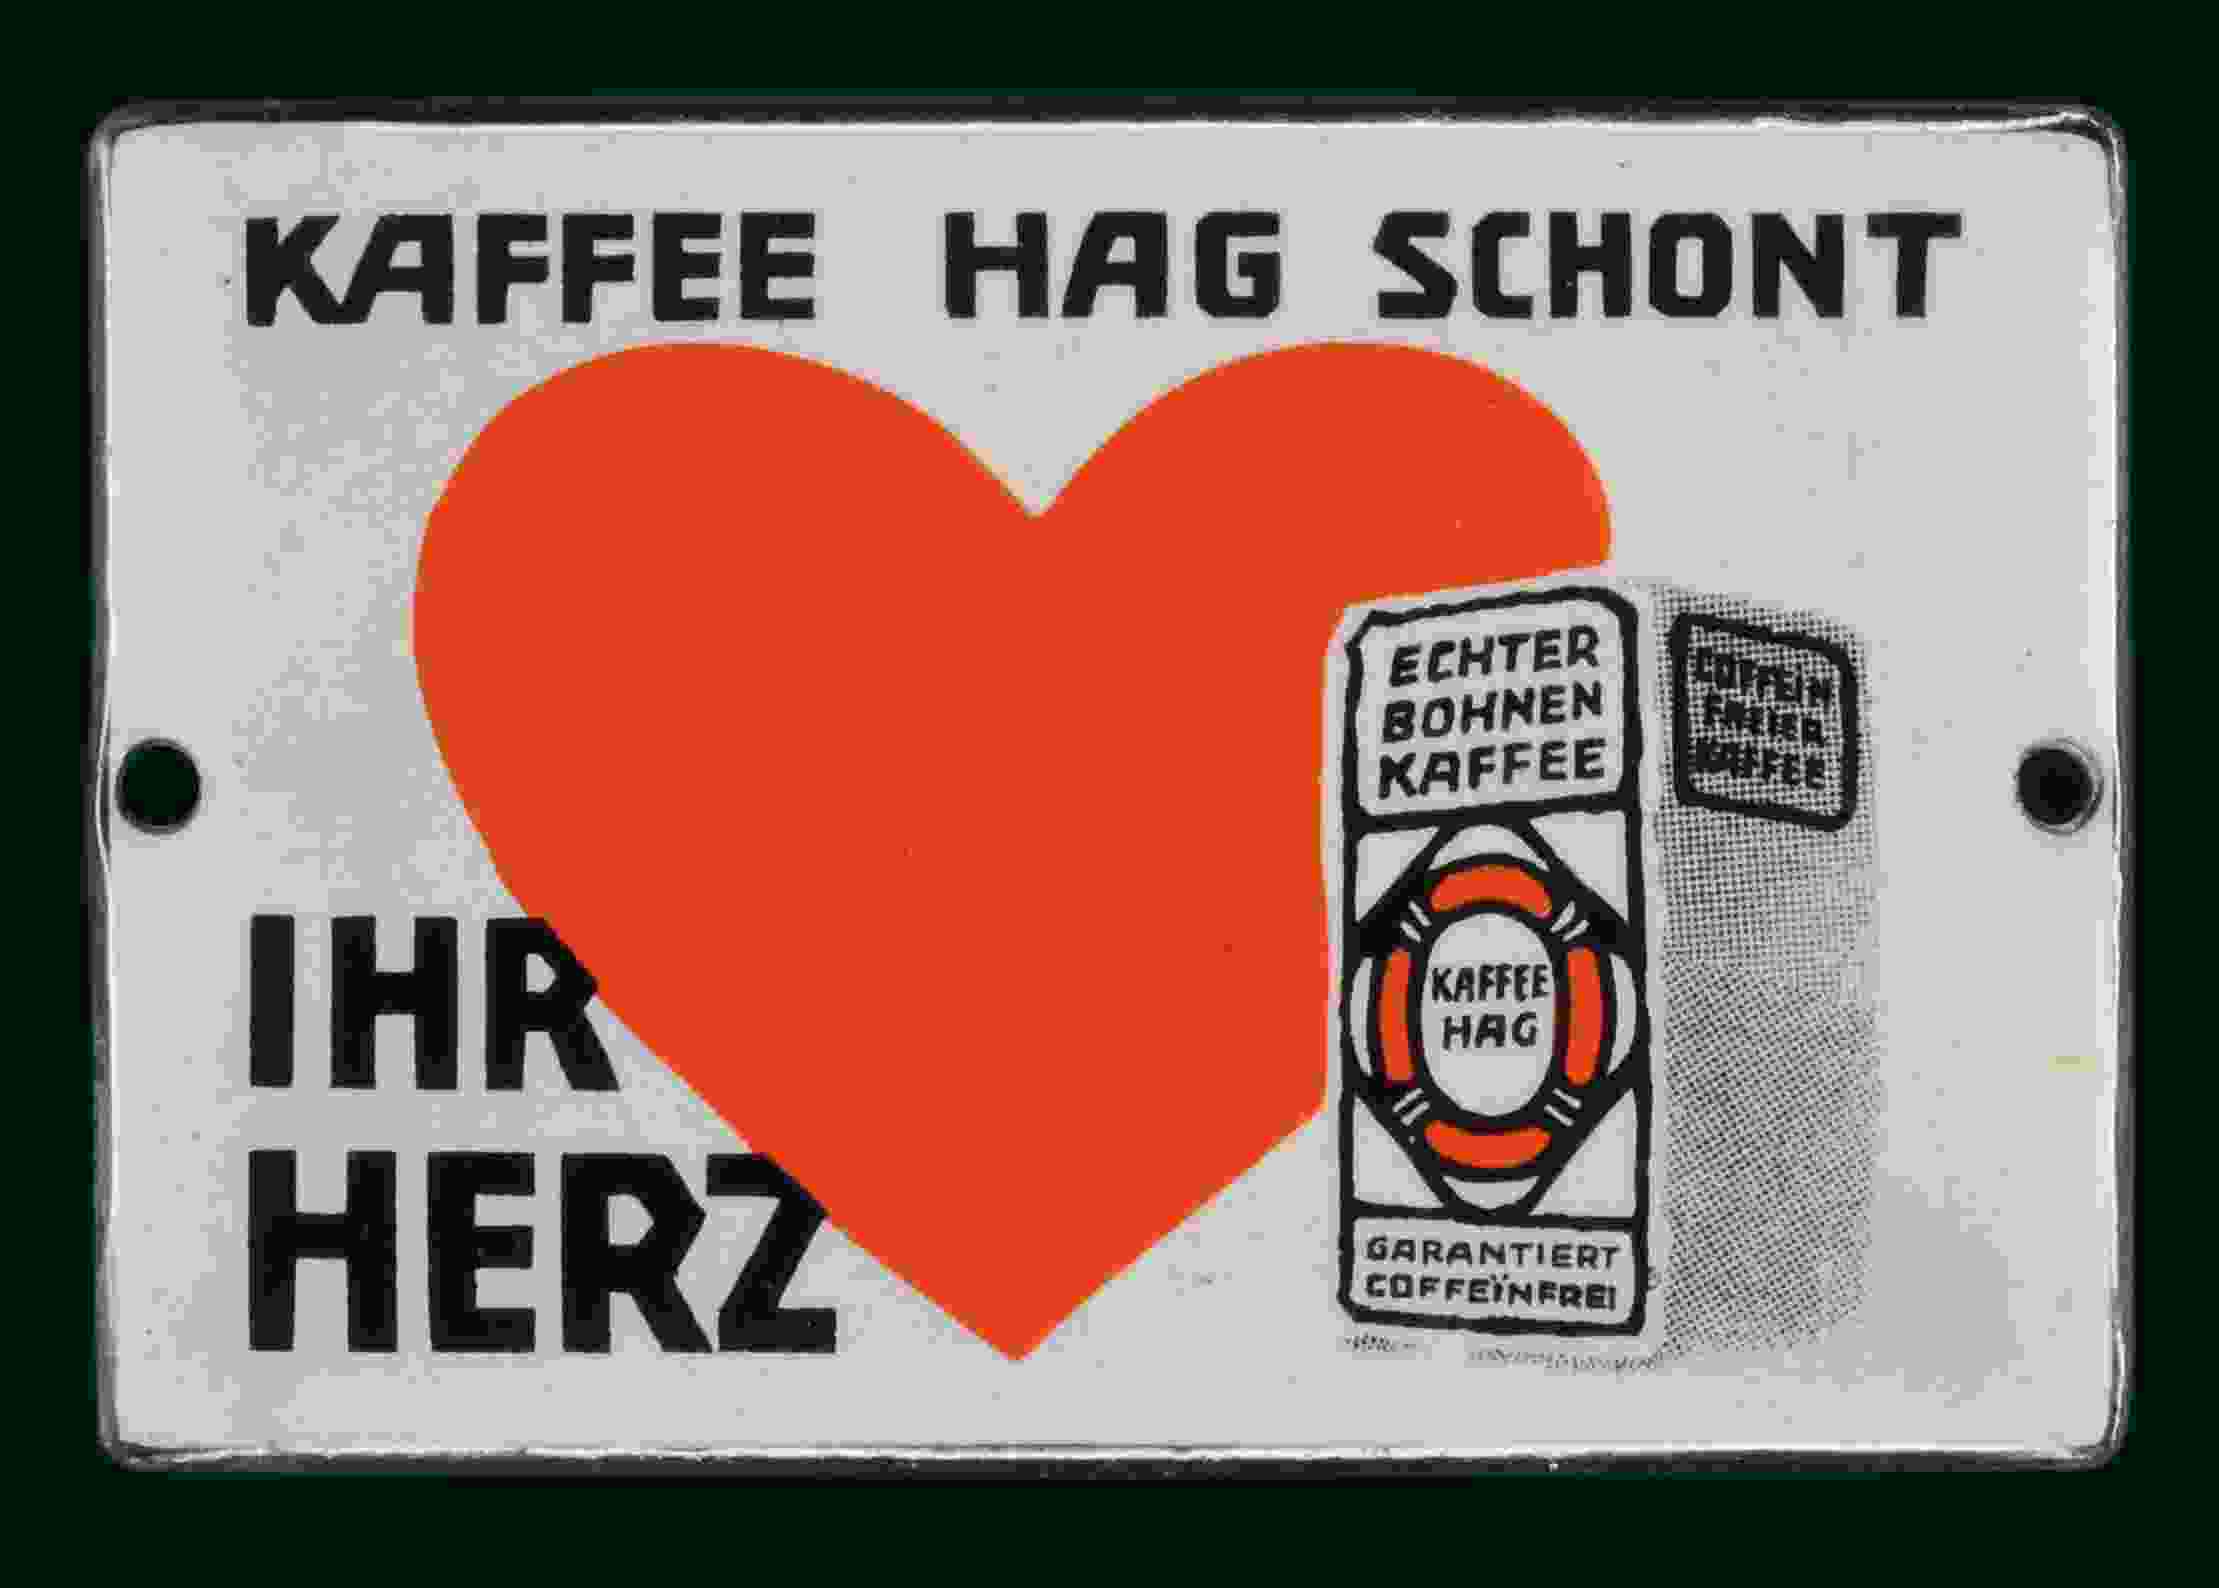 Kaffee Hag schont Ihr Herz 